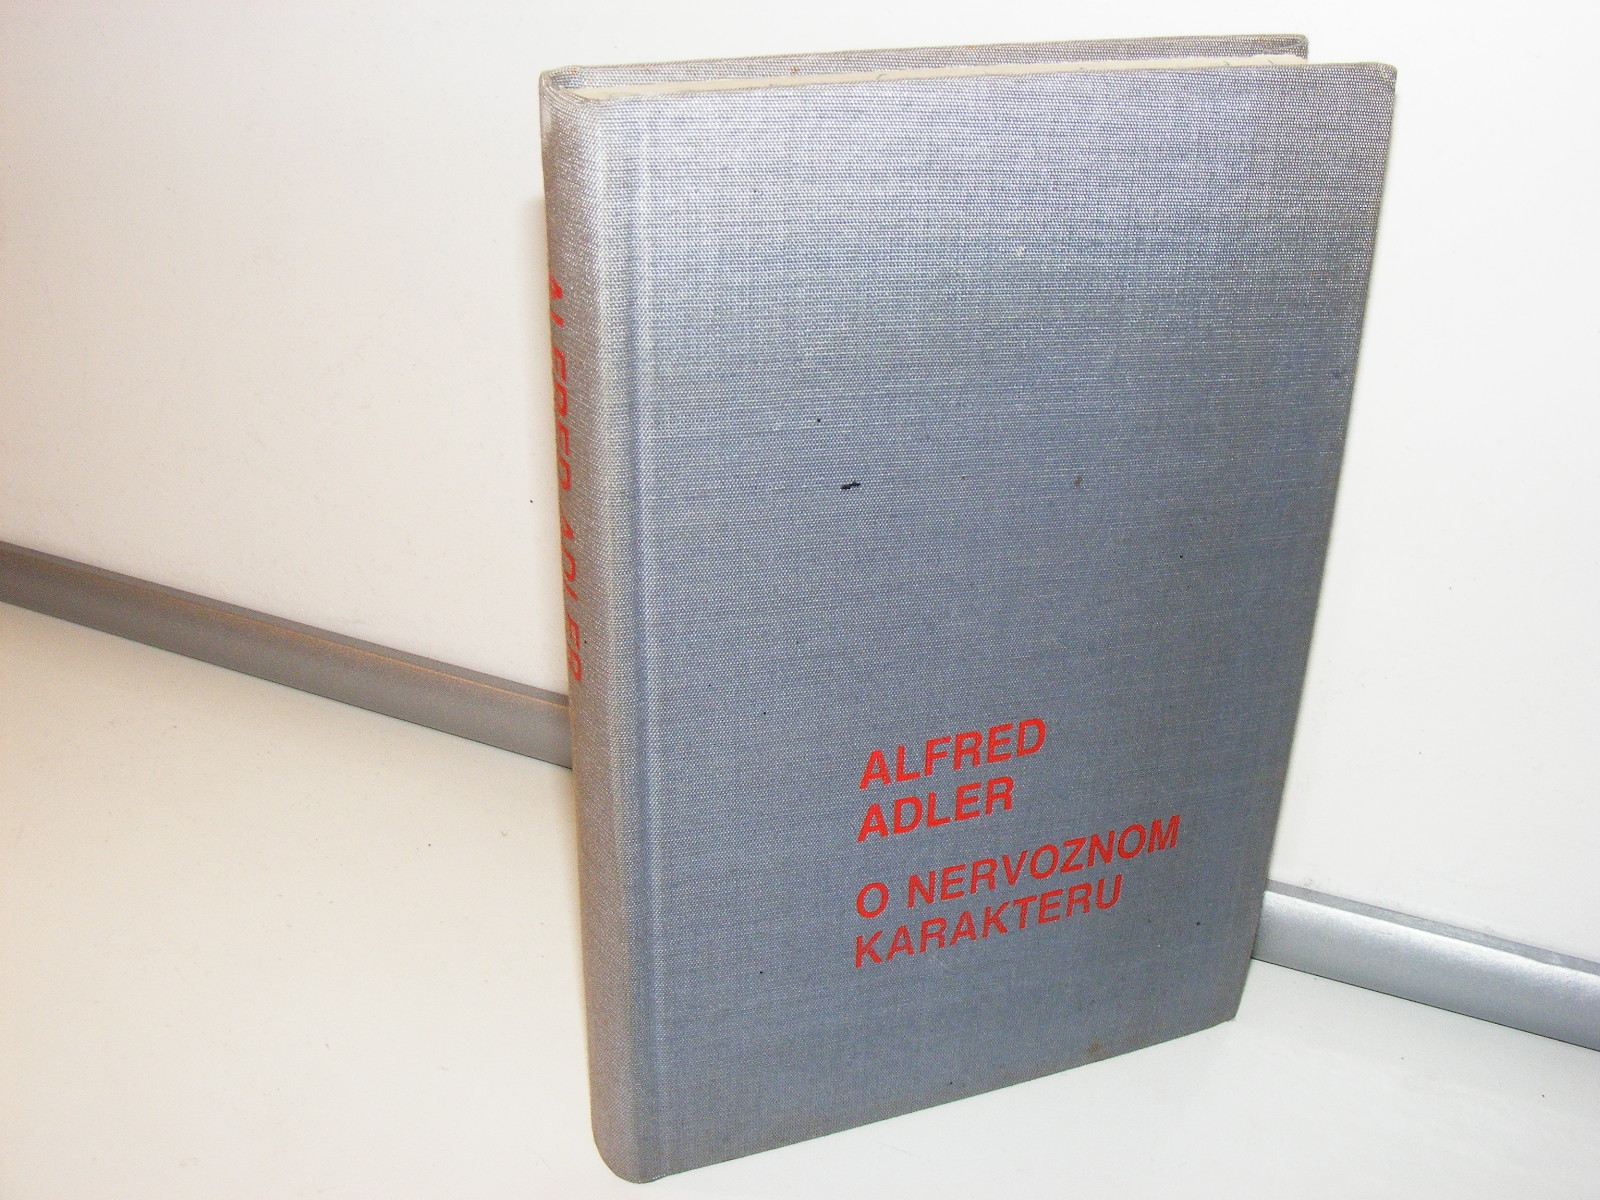 O nervoznom karakteru Alfred Adler